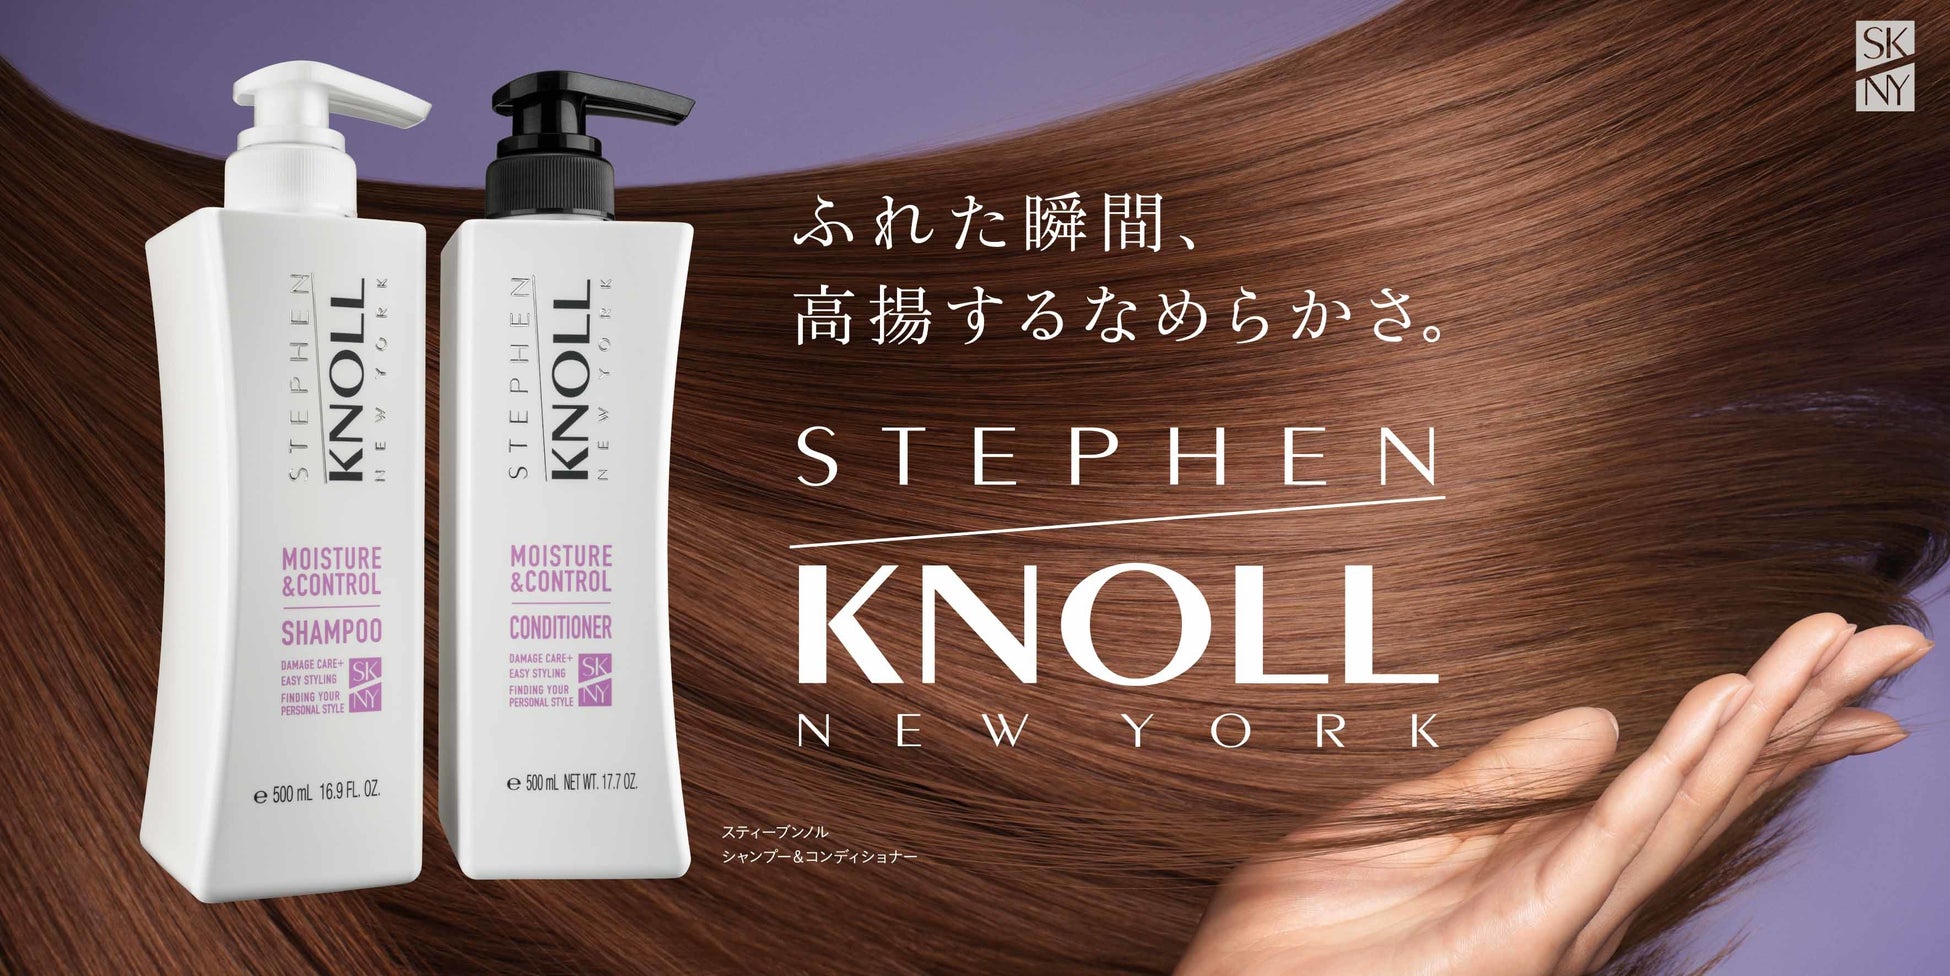 『スティーブンノル ニューヨーク』“髪悩み別に選べる”インバスシリーズをパワーアップリニューアル　　　　　　　　　　　　　　　　　　　　　　　　　　　　　　　　　　